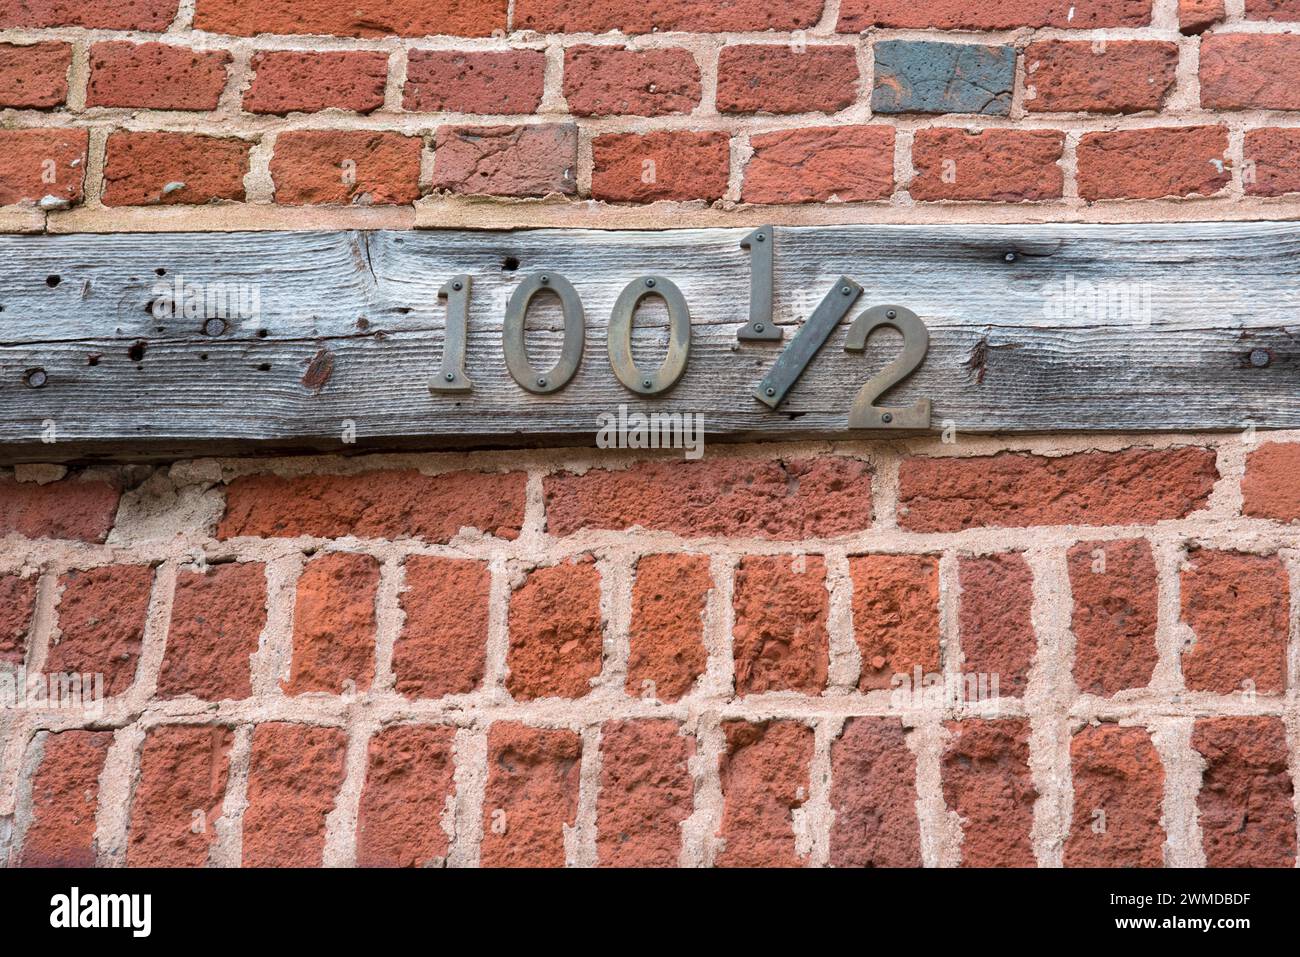 Targa di indirizzo in legno vecchia e resistente agli agenti atmosferici con cifre metalliche, numero insolito 100 1/2. Foto Stock